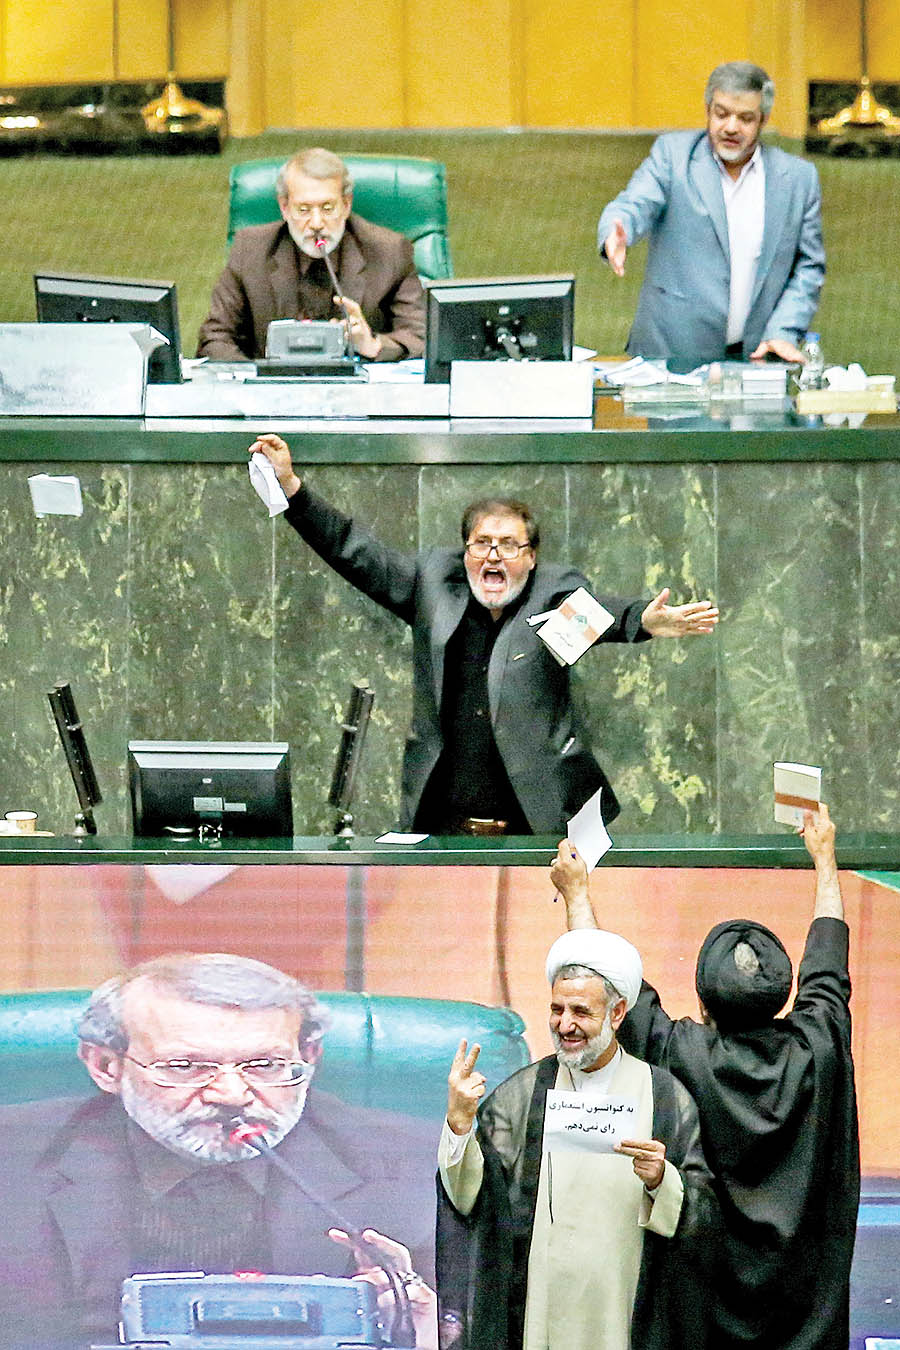 ابطحی از مخالفان لایحه، در اعتراض به اداره جلسه توسط علی لاریجانی، کتابچه آیین نامه داخلی مجلس را پاره کرد.